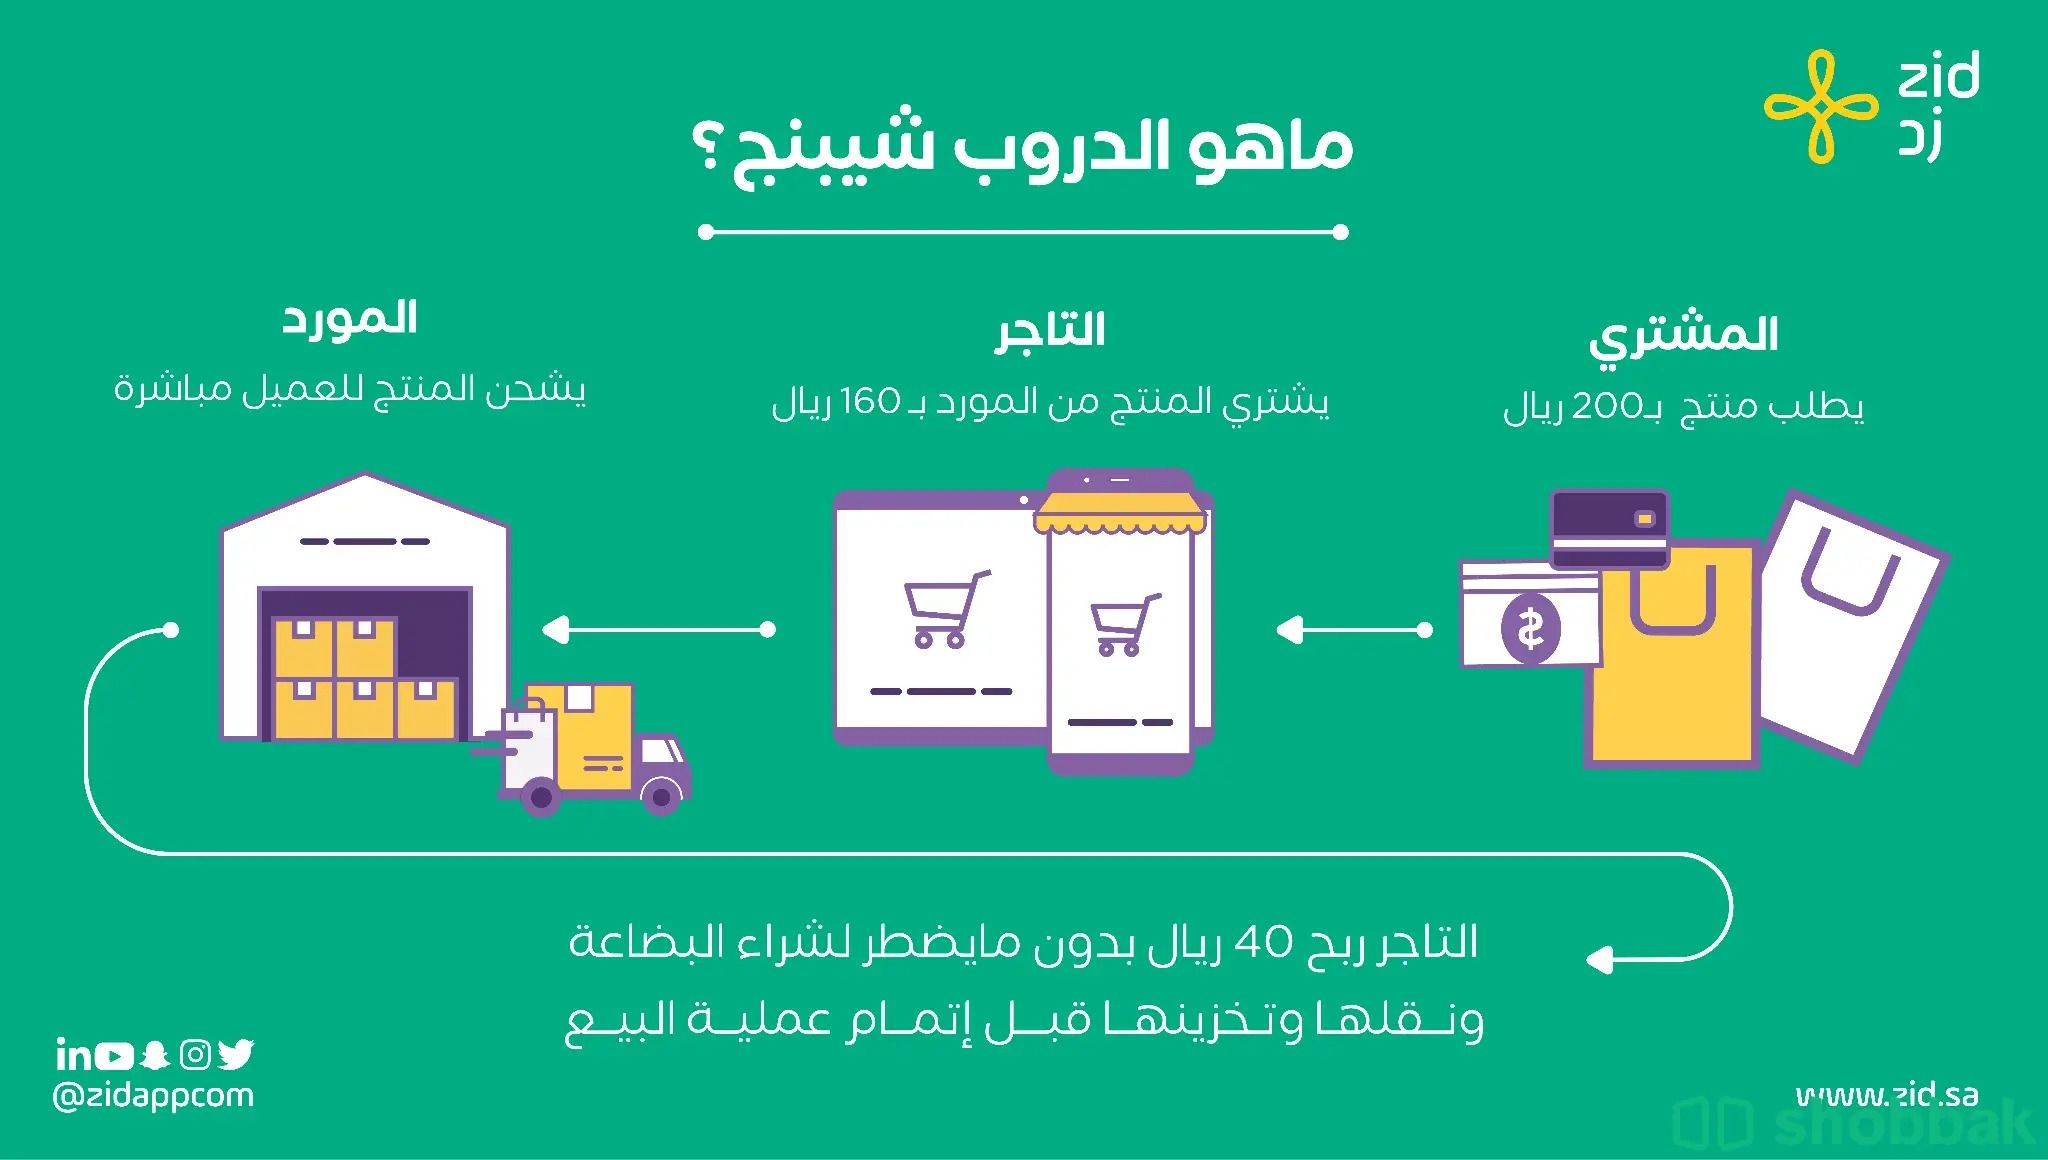 إنشاء متجر دروب شيبنغ على سلة Shobbak Saudi Arabia